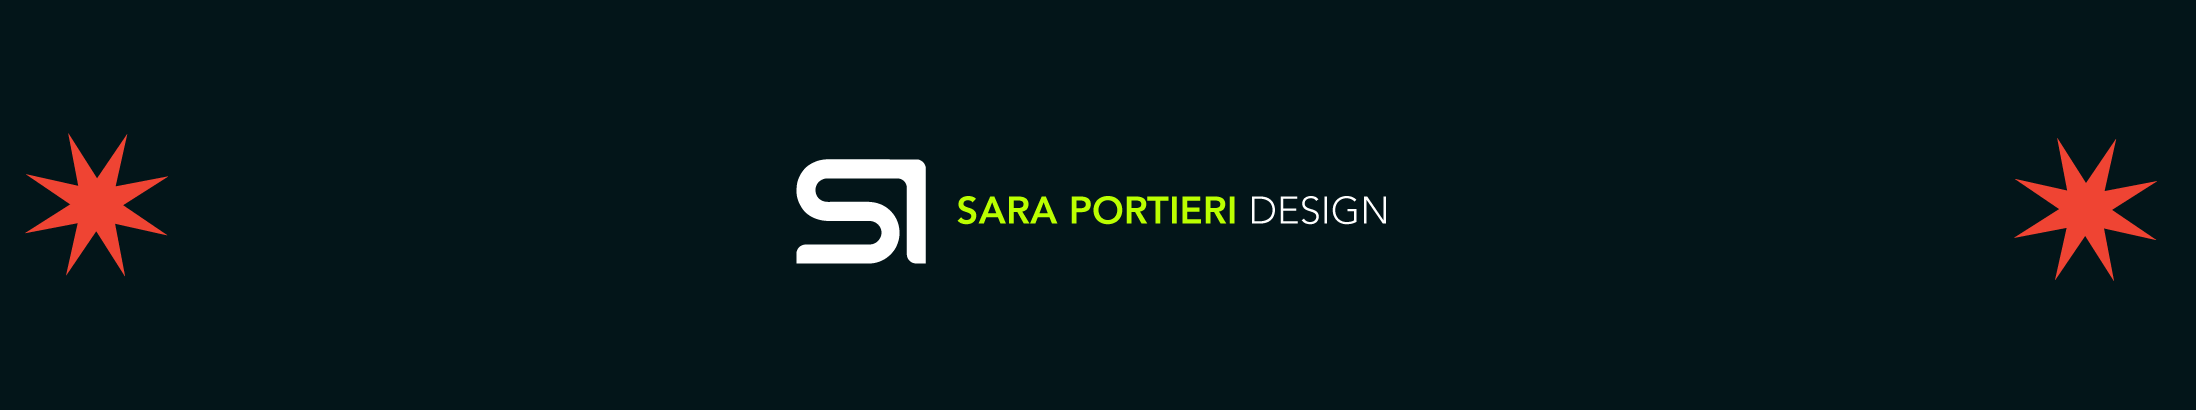 Sara Portieri のプロファイルバナー